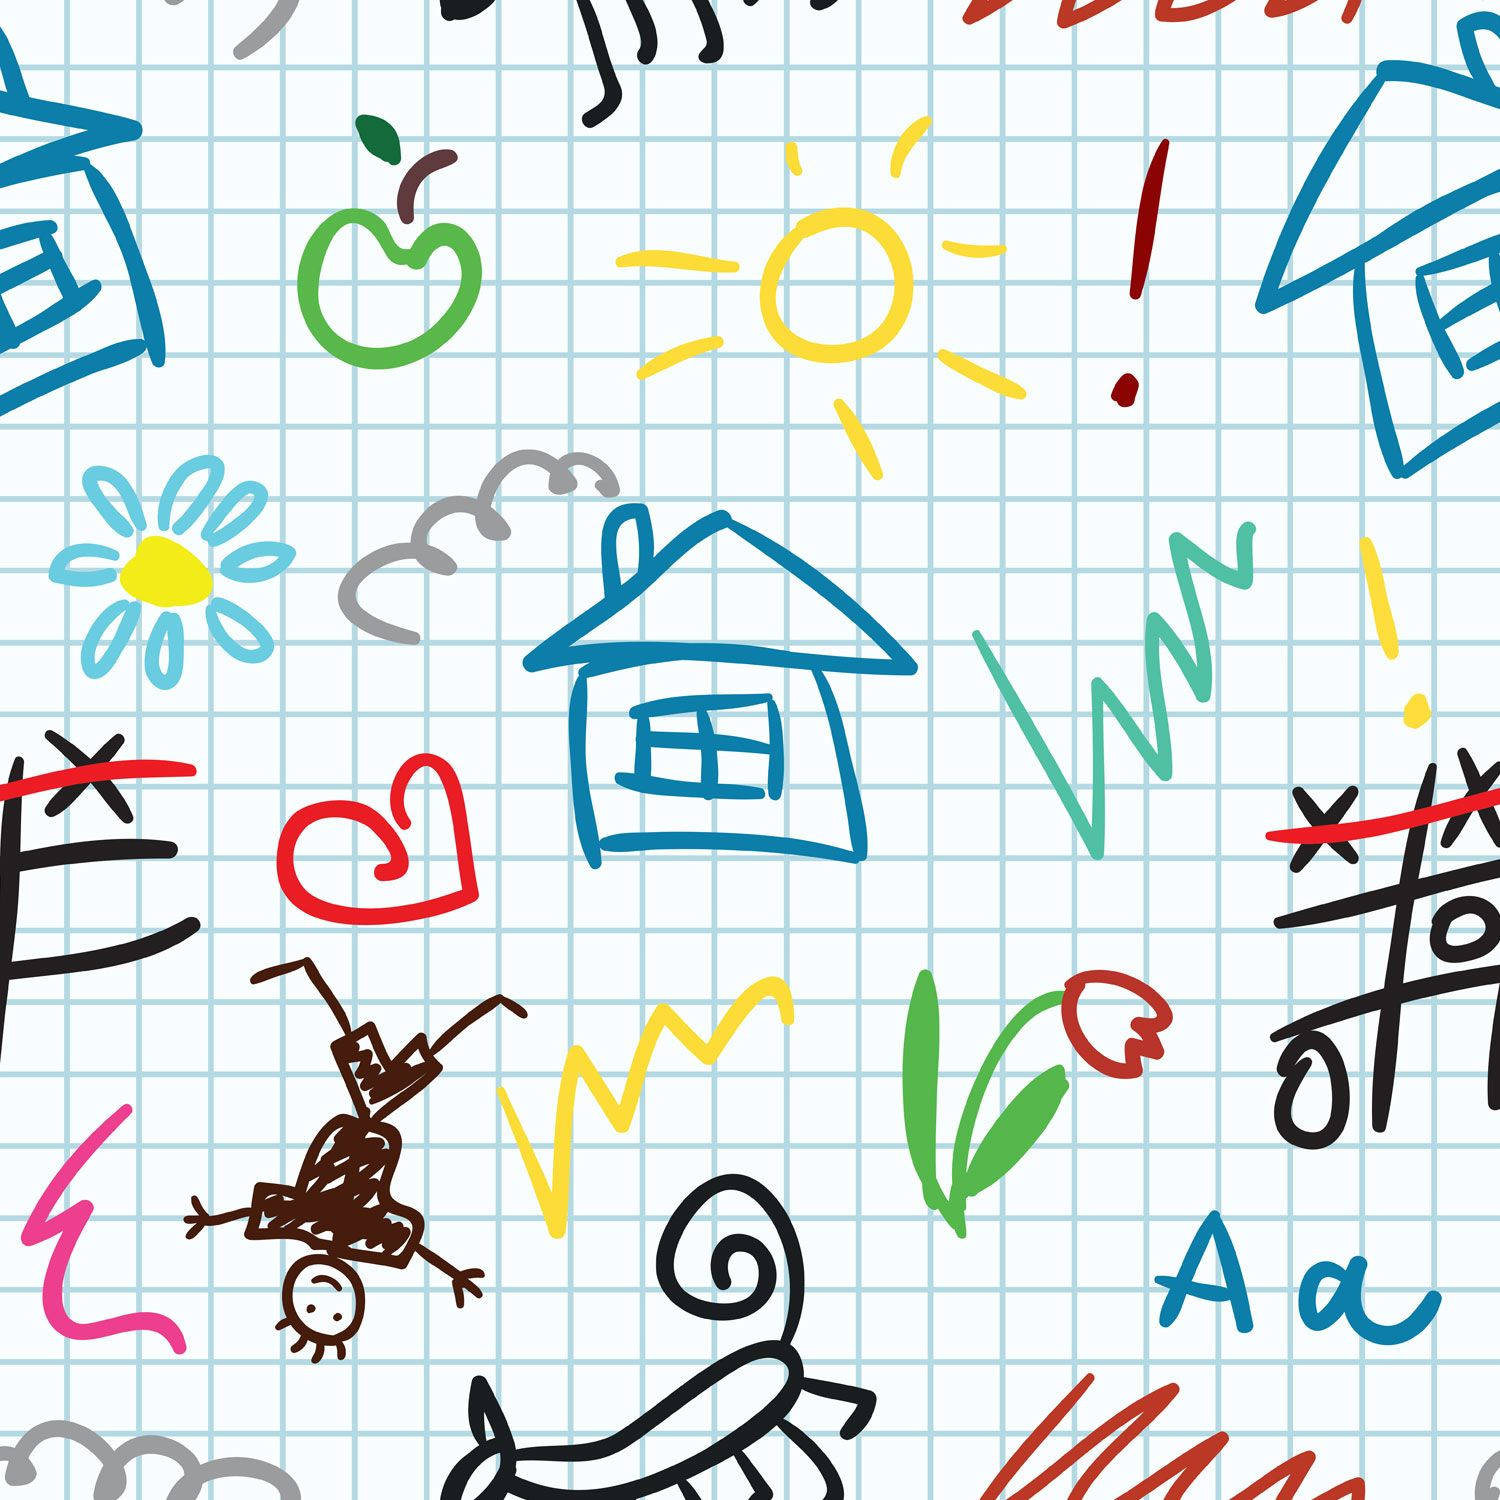 Creative Kids School Doodle Art Wallpaper